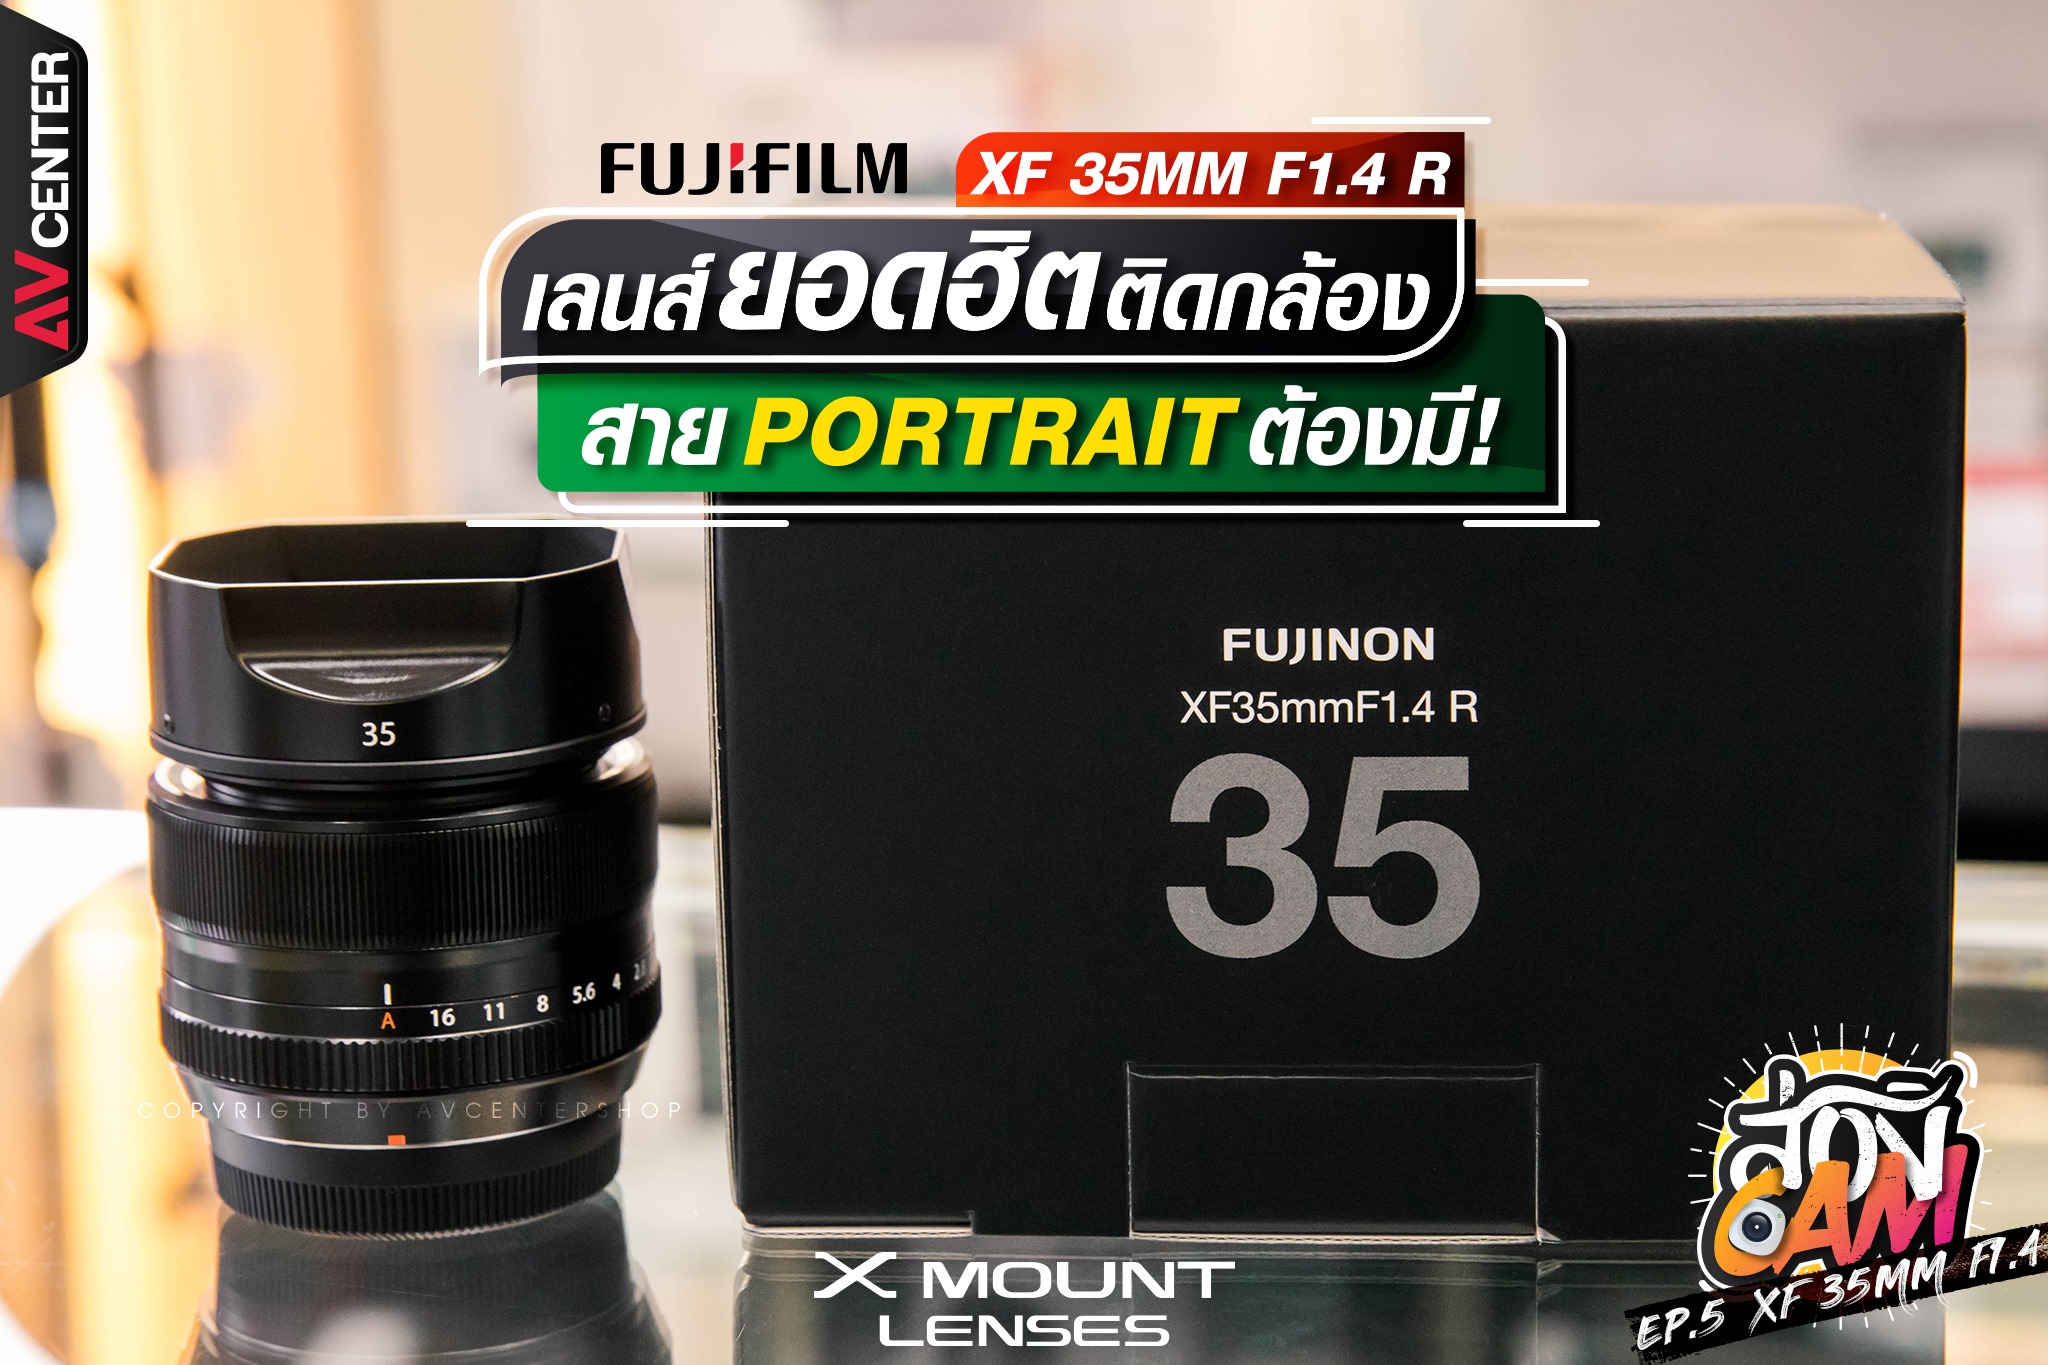 ส่อง Cam : EP.5 "FUJIFILM XF 35MM F1.4 R" เลนส์ยอดฮิตติดกล้อง สาย Portrait ต้องมี!